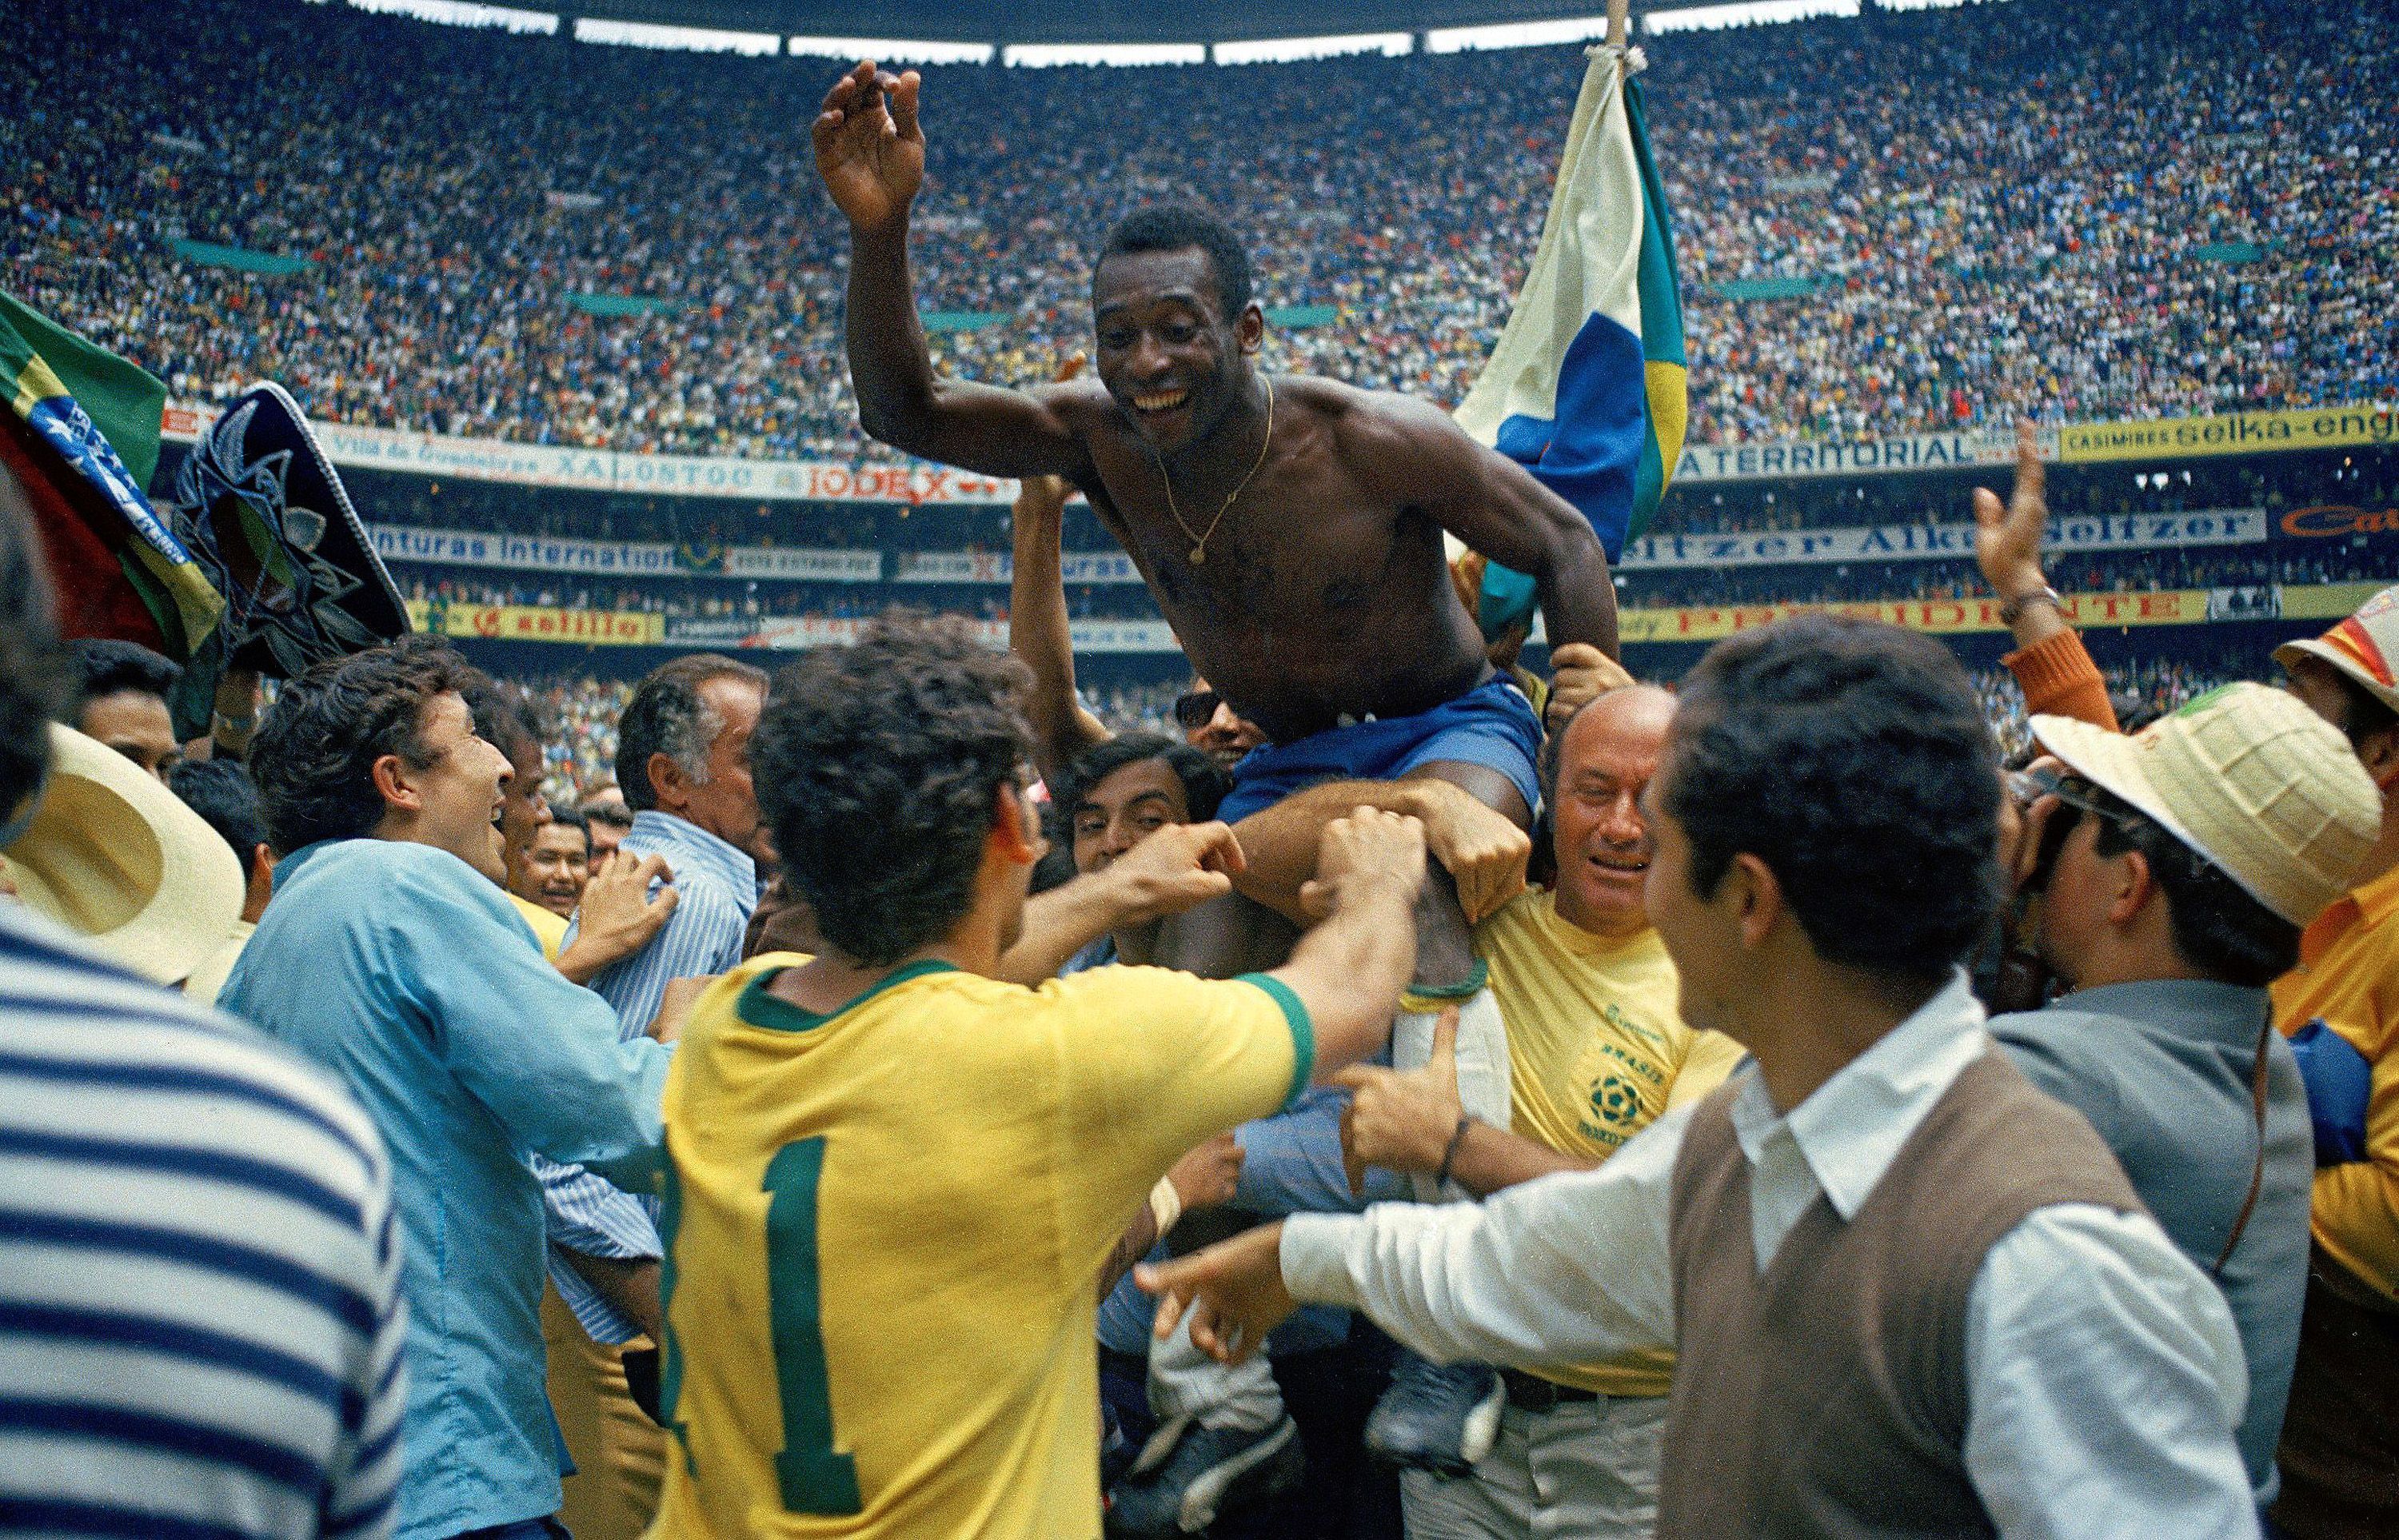 Pele und Brasilien gewannen 1970 die Weltmeisterschaft im Aztekenstadion